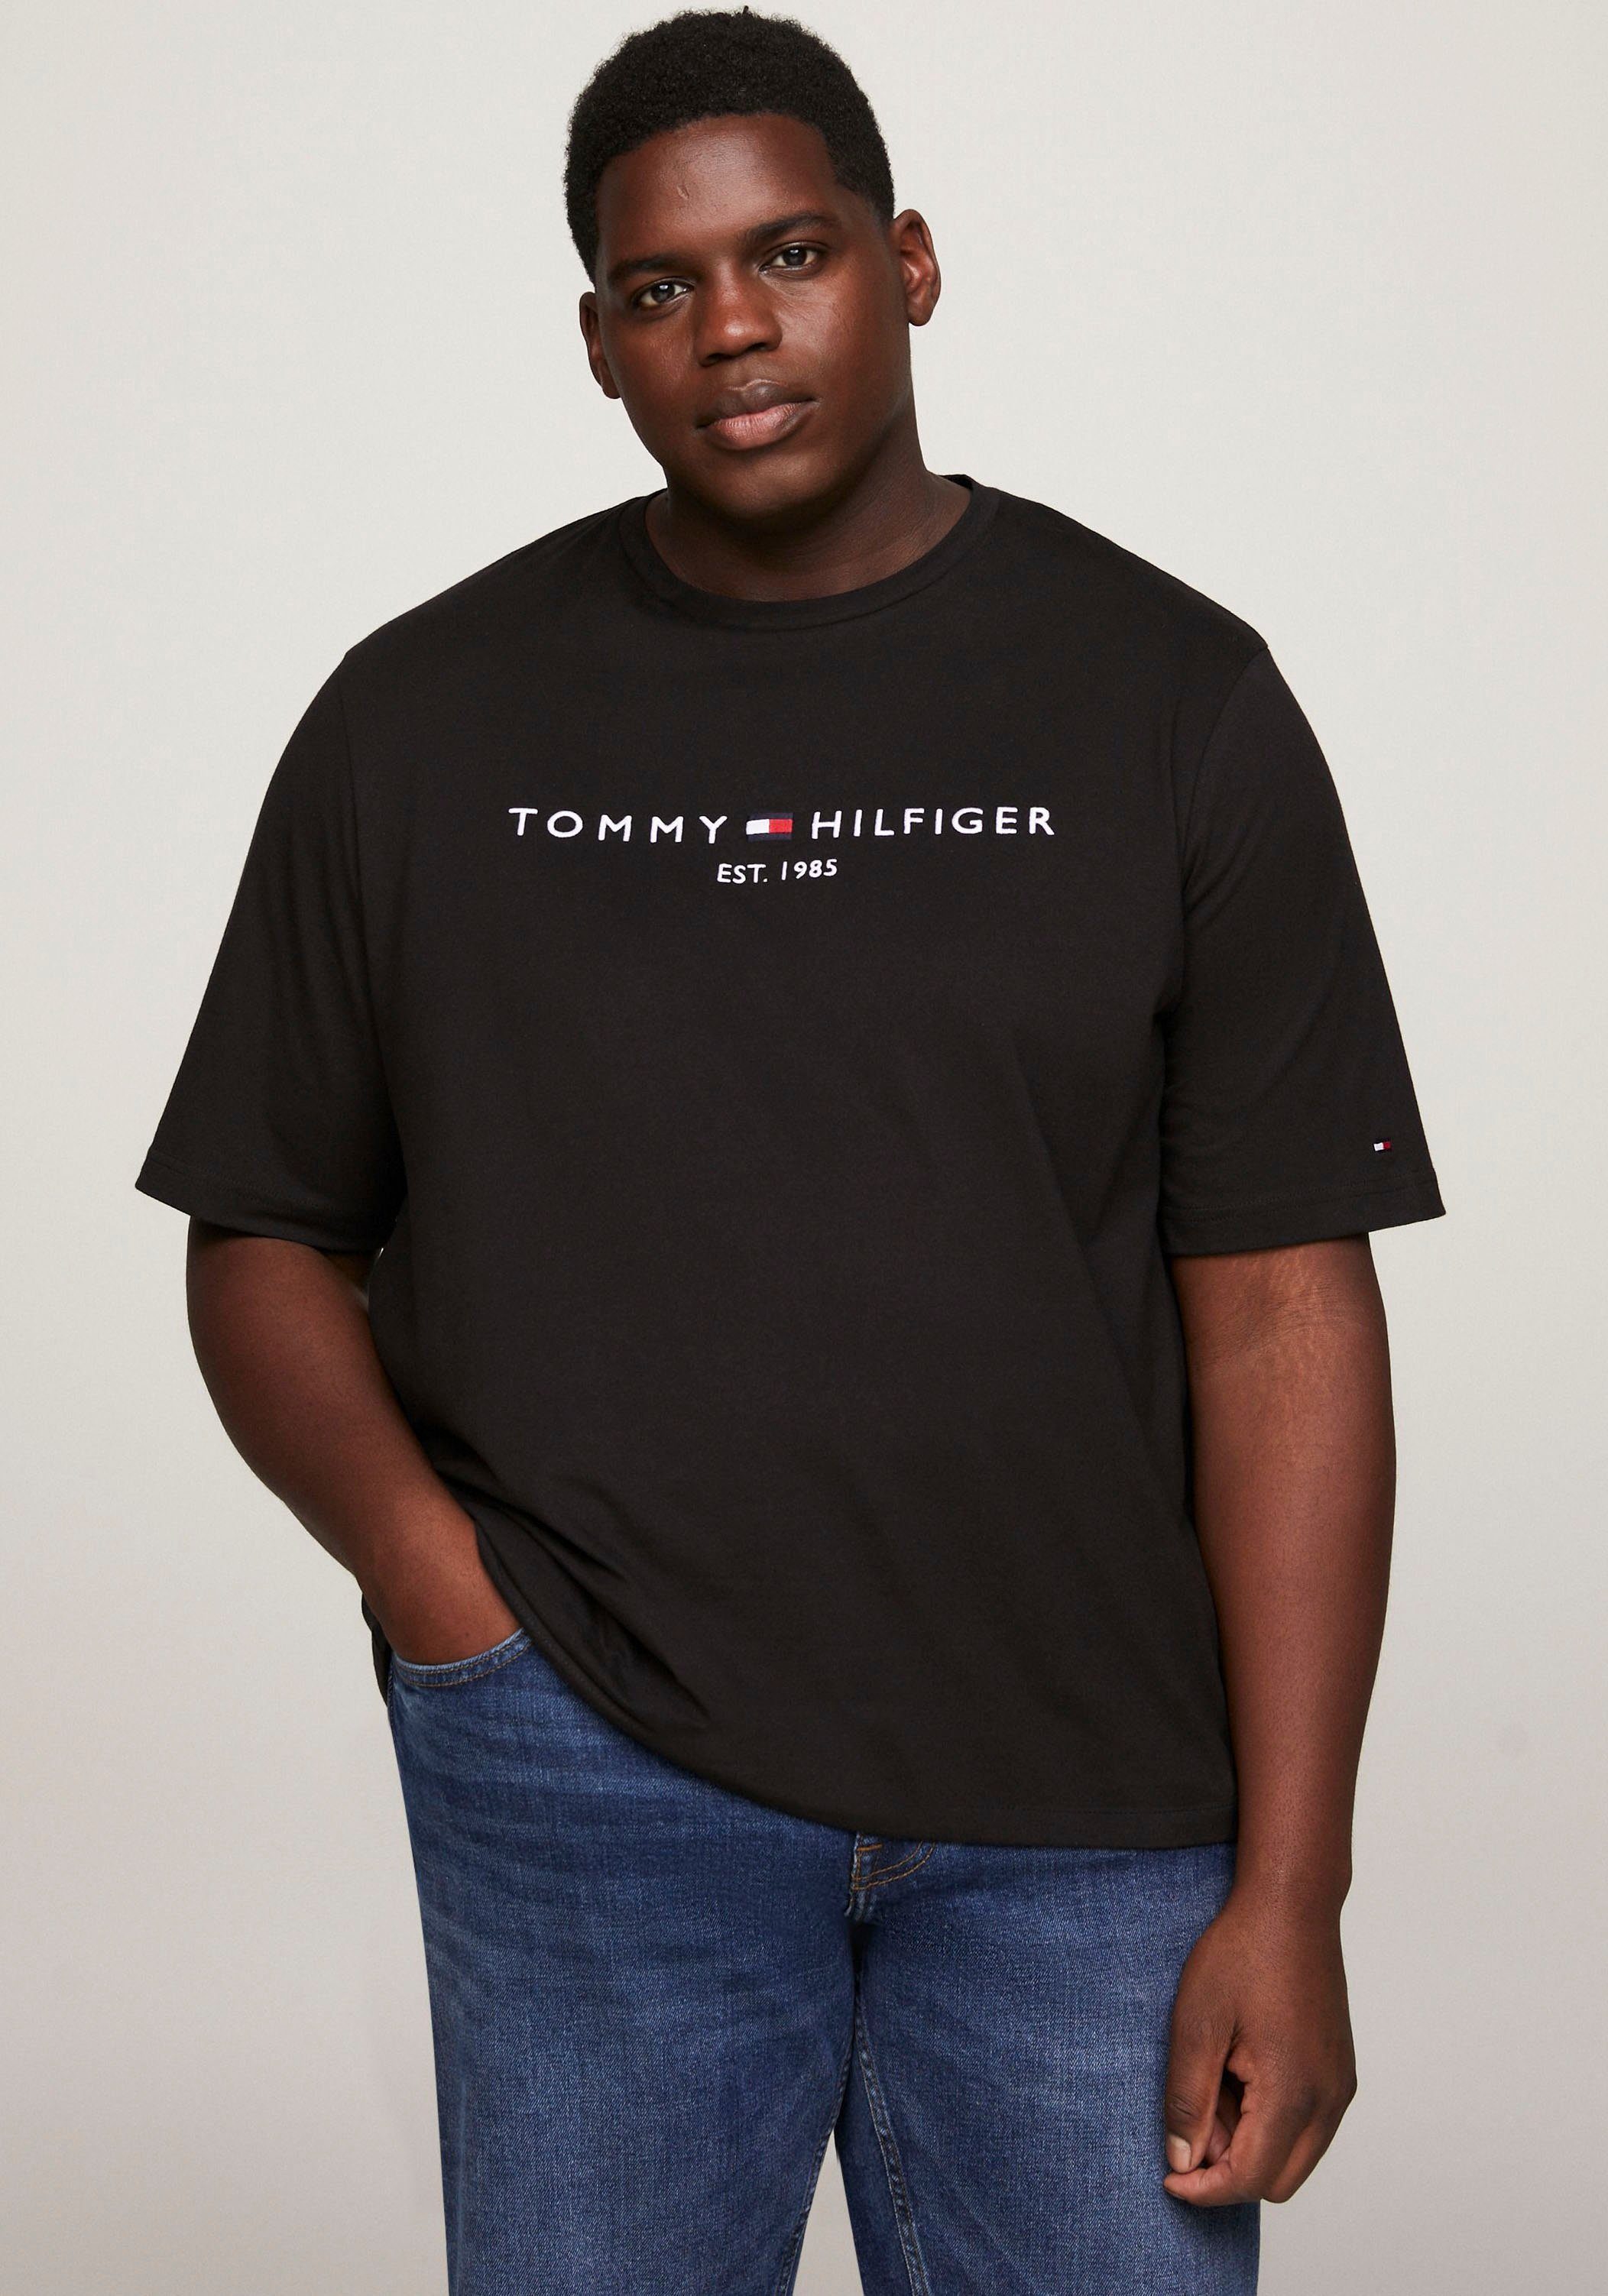 TEE-B Black T-Shirt BT-TOMMY & Big Tall LOGO Hilfiger Tommy